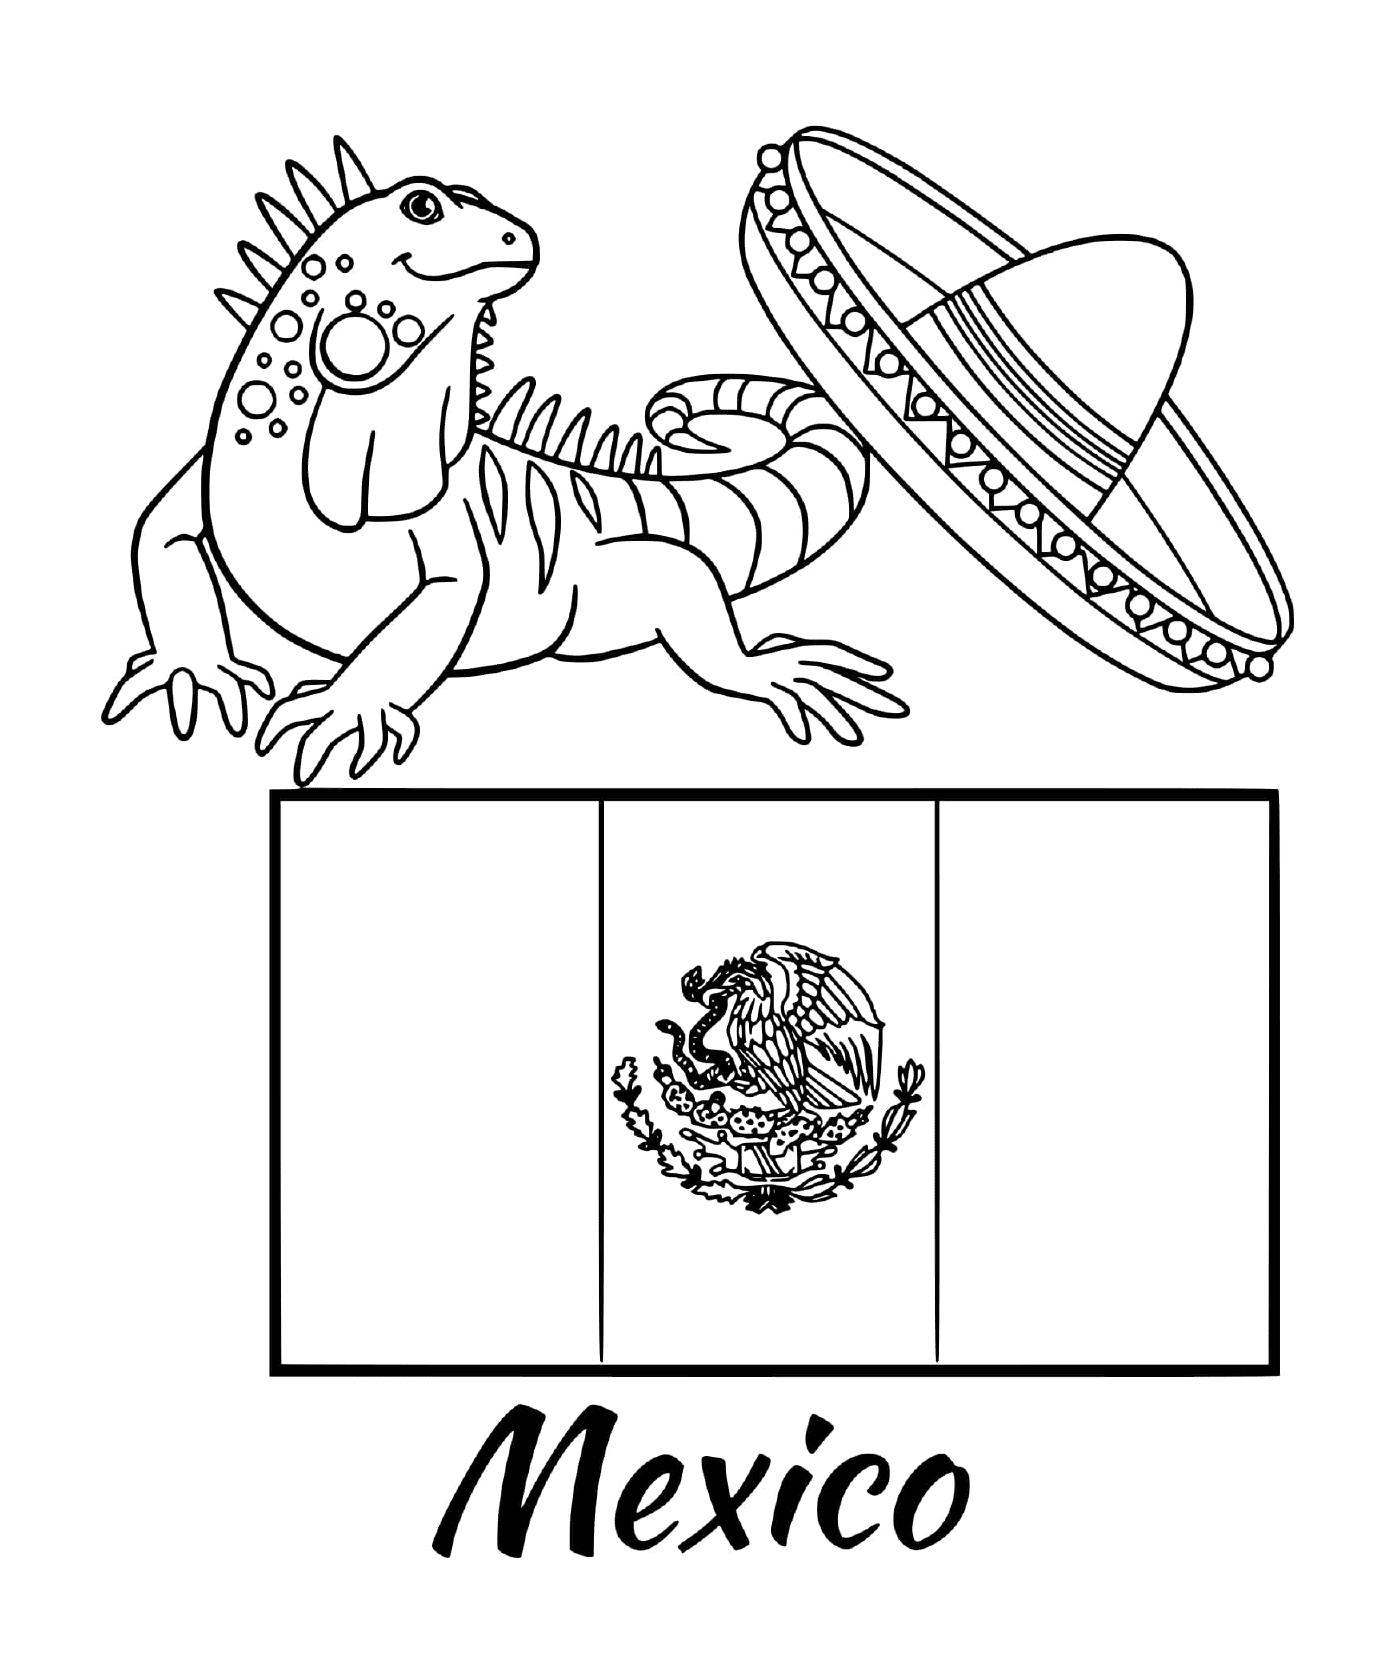  Bandera de México con iguana 